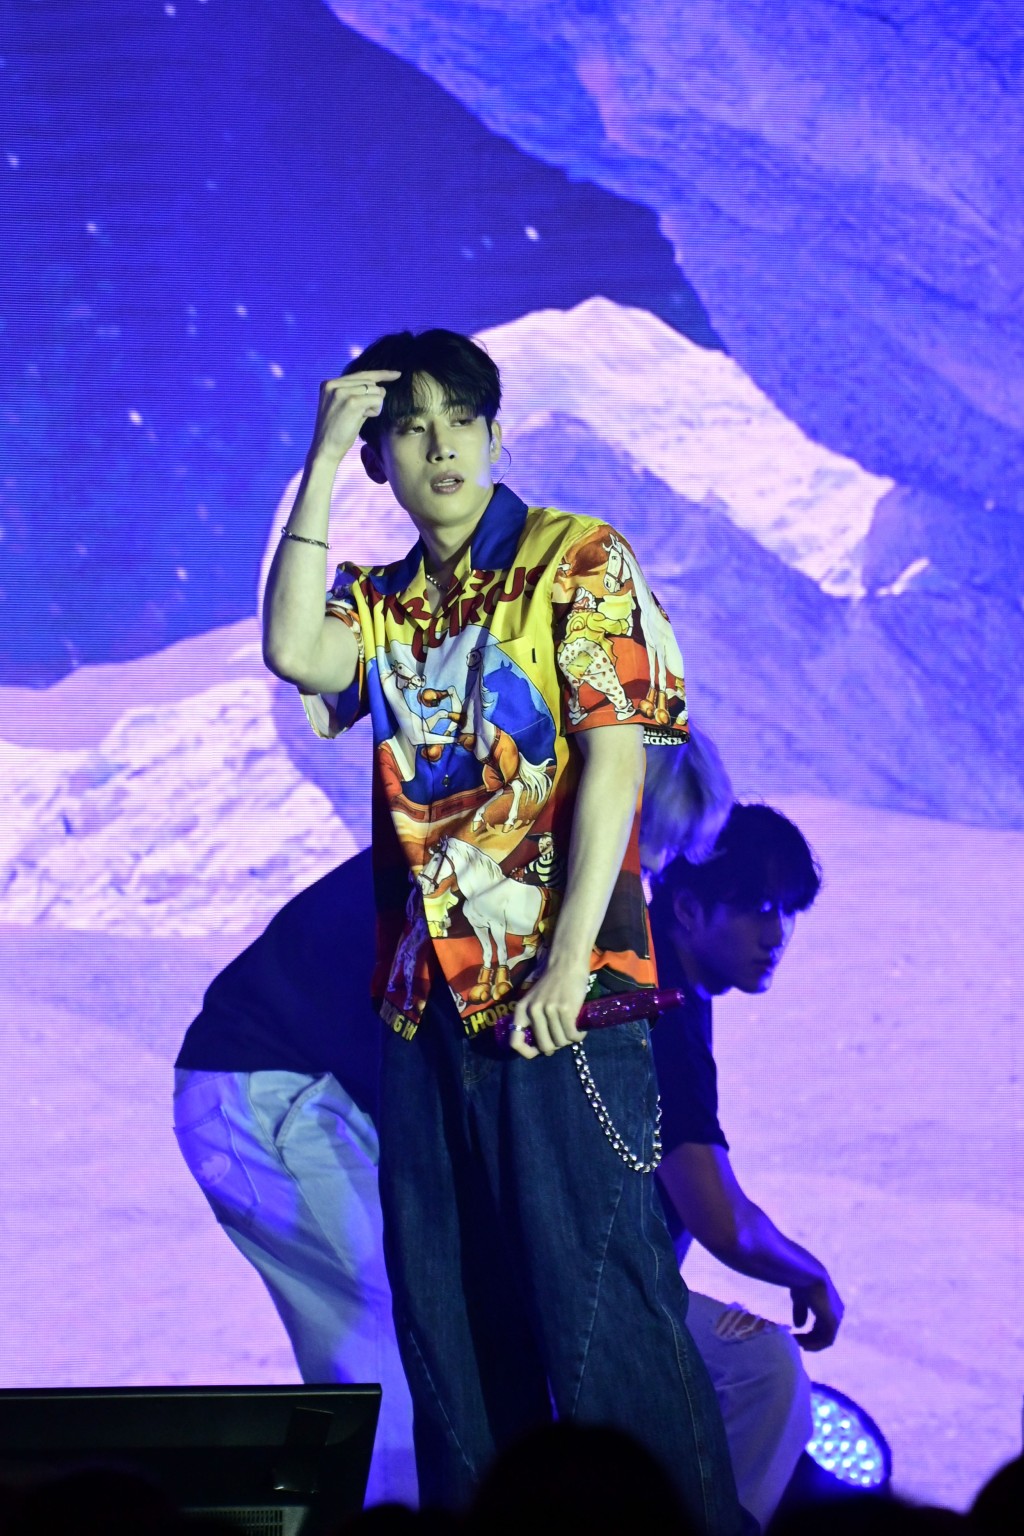 韓勝宇開場便在舞蹈員伴舞下接連跳唱《Intro》以及《Dive into》。